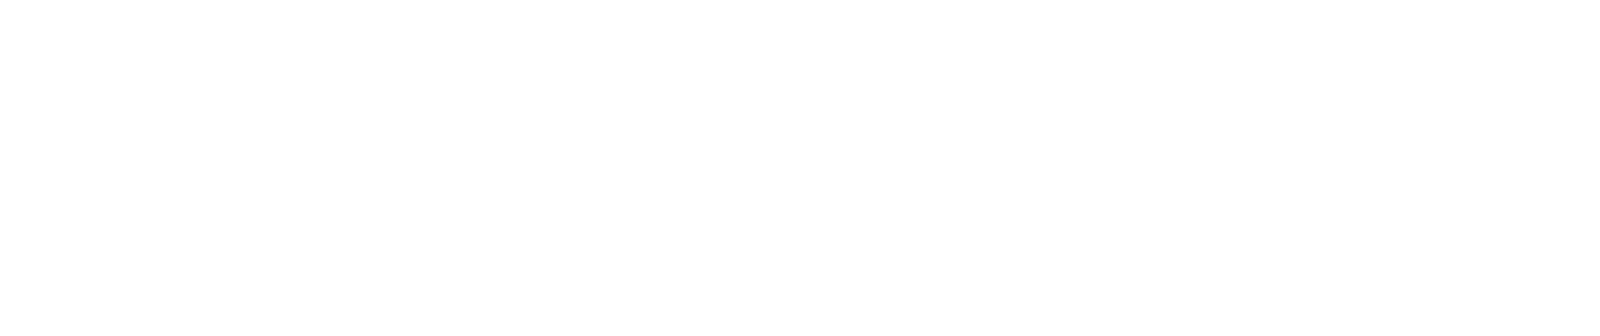 Cushman & Wakefield
 Logo groß für dunkle Hintergründe (transparentes PNG)